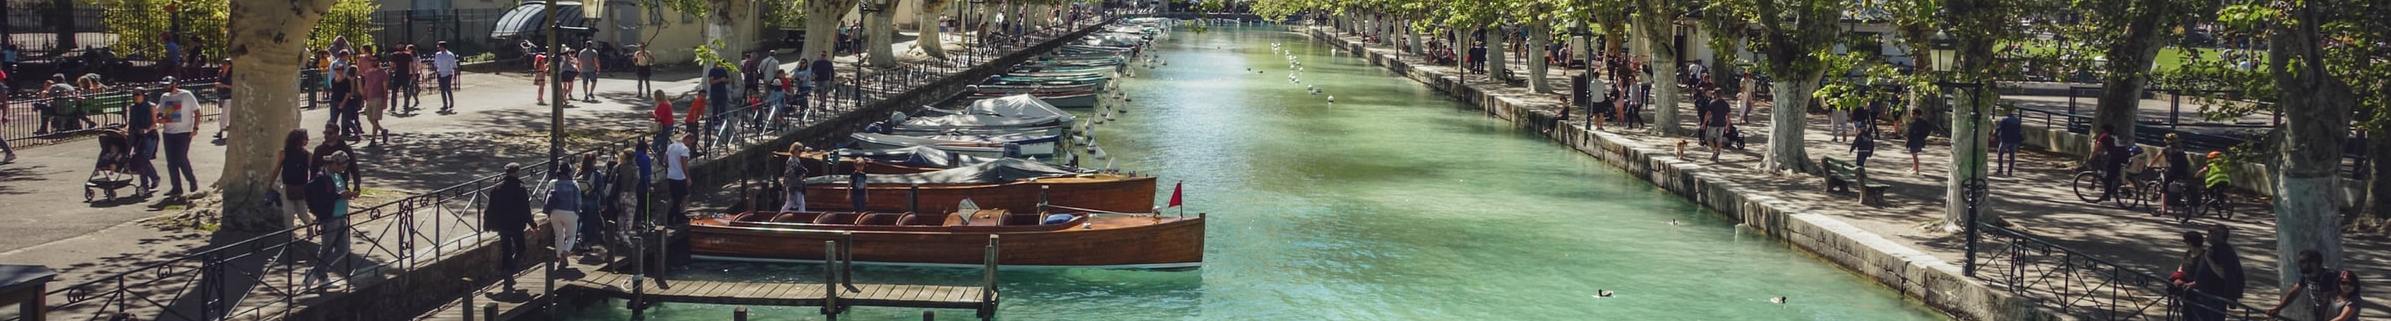 Vallat Immo lacs: agences spécialistes de la vente de maisons et appartements autour du Lac d'Annecy, Lac du Bourget, Aix-les-Bains